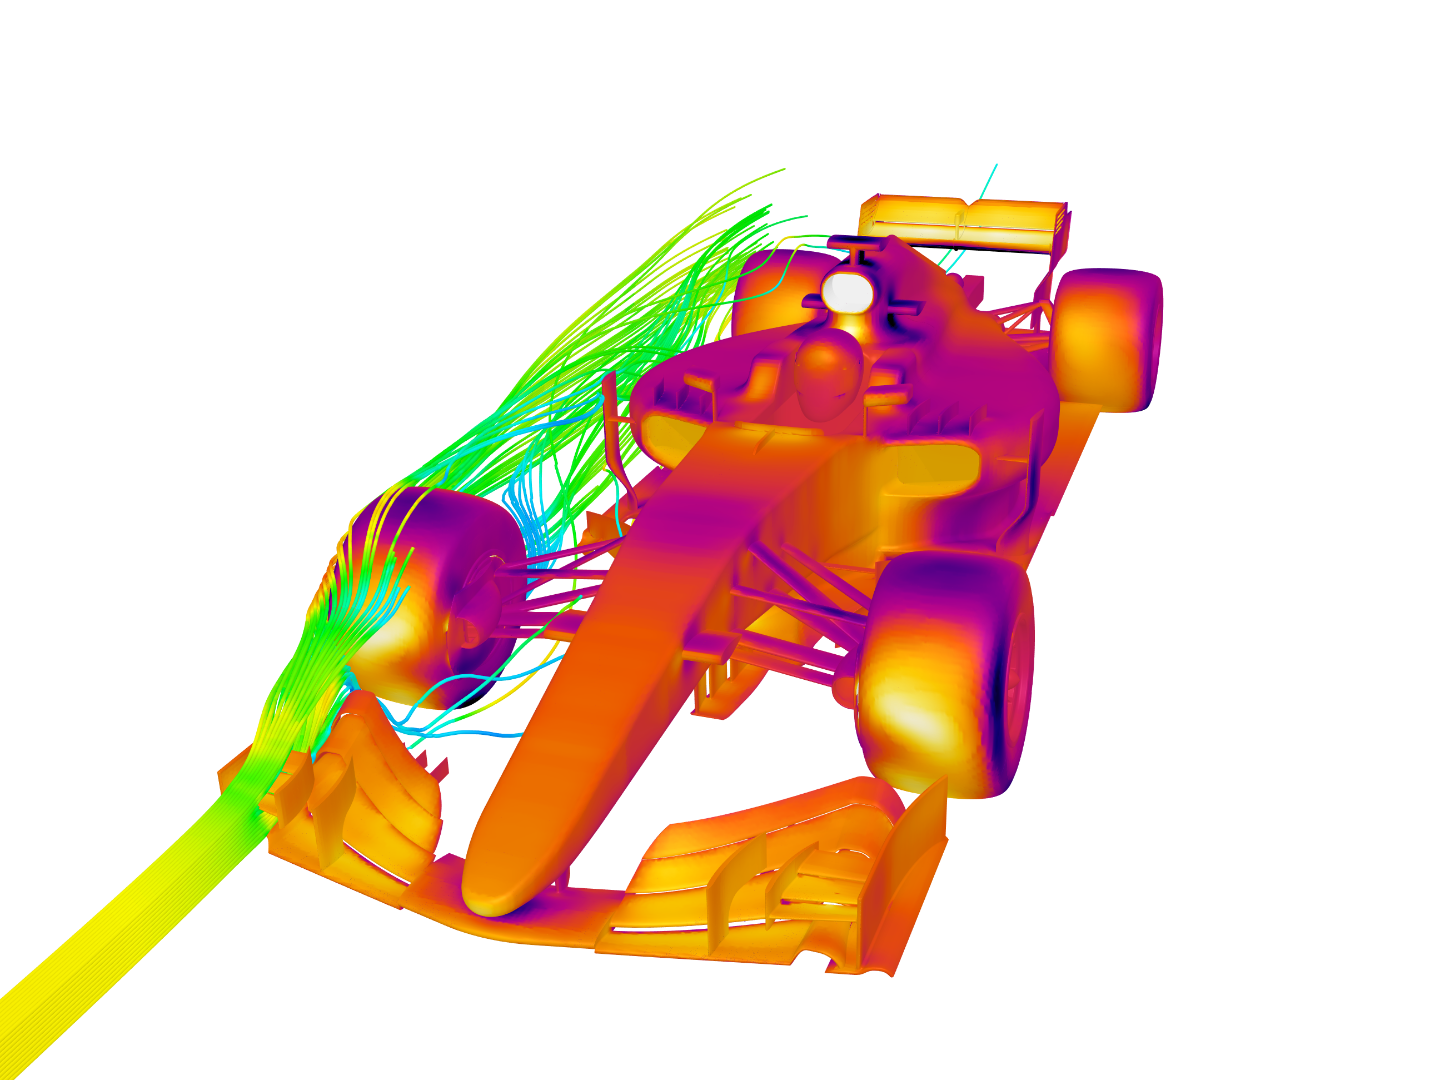 F1 aero image